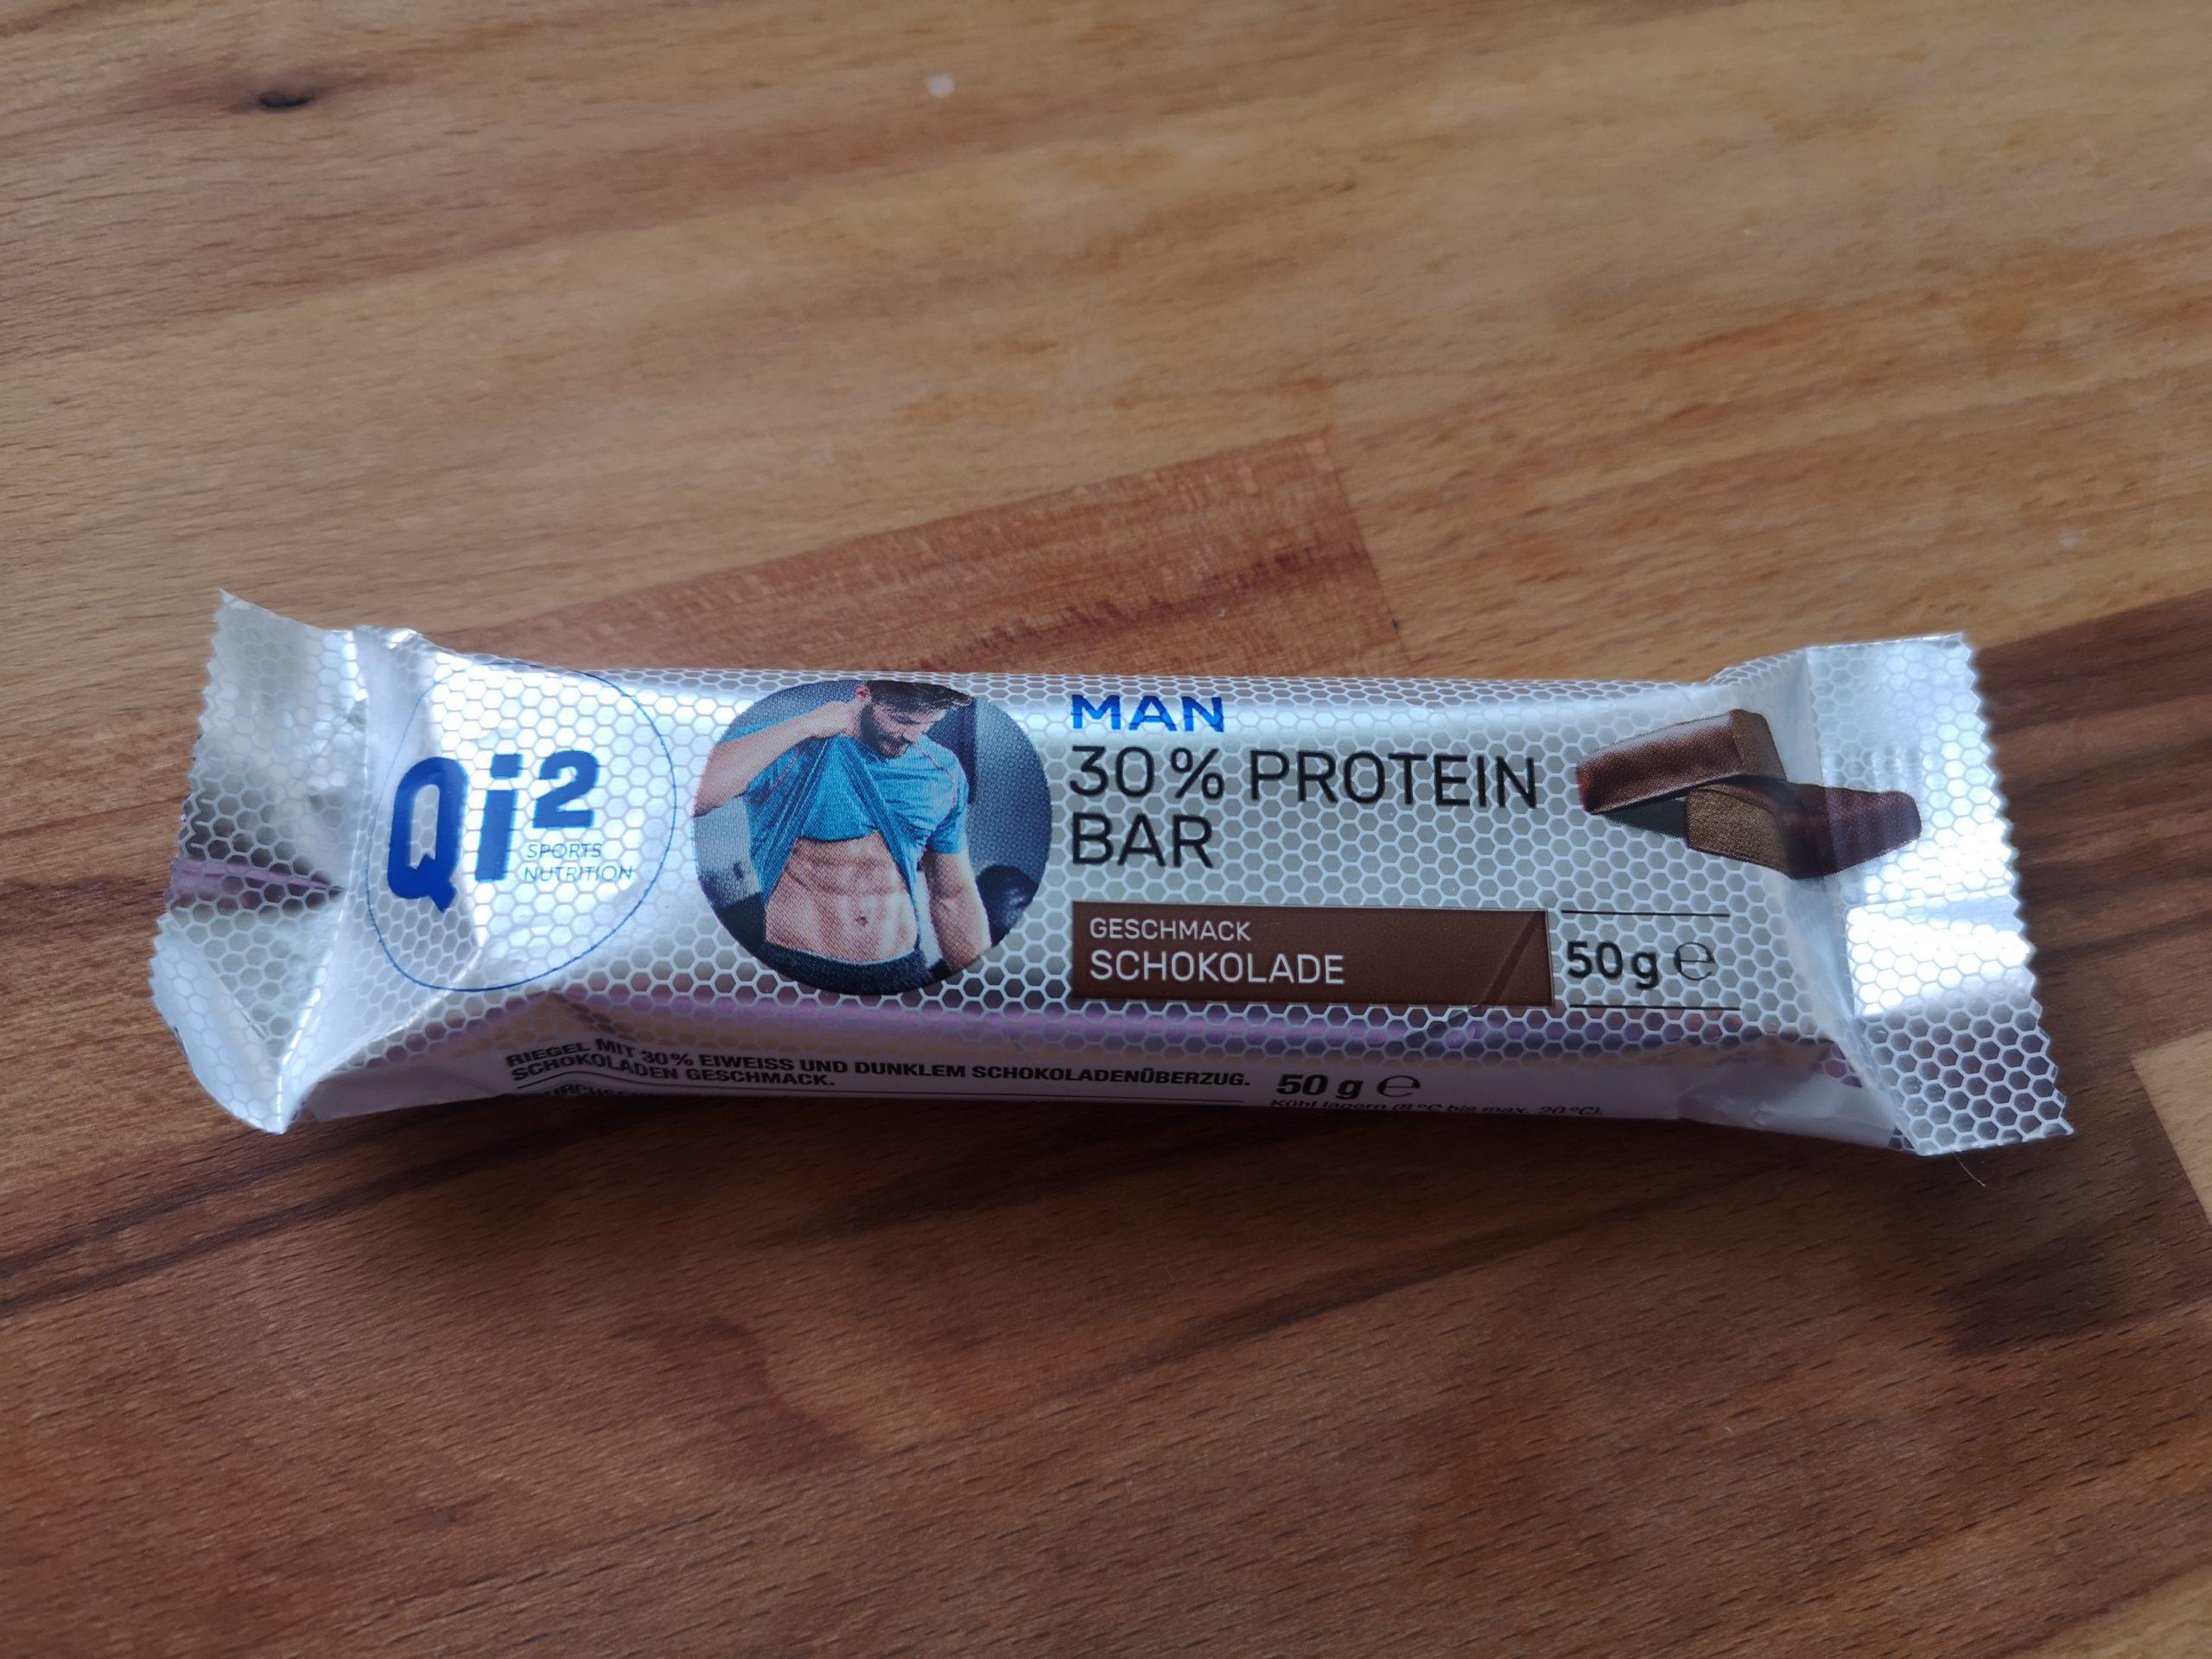 Qi2 Man 30% Protein Bar - Produkt Test